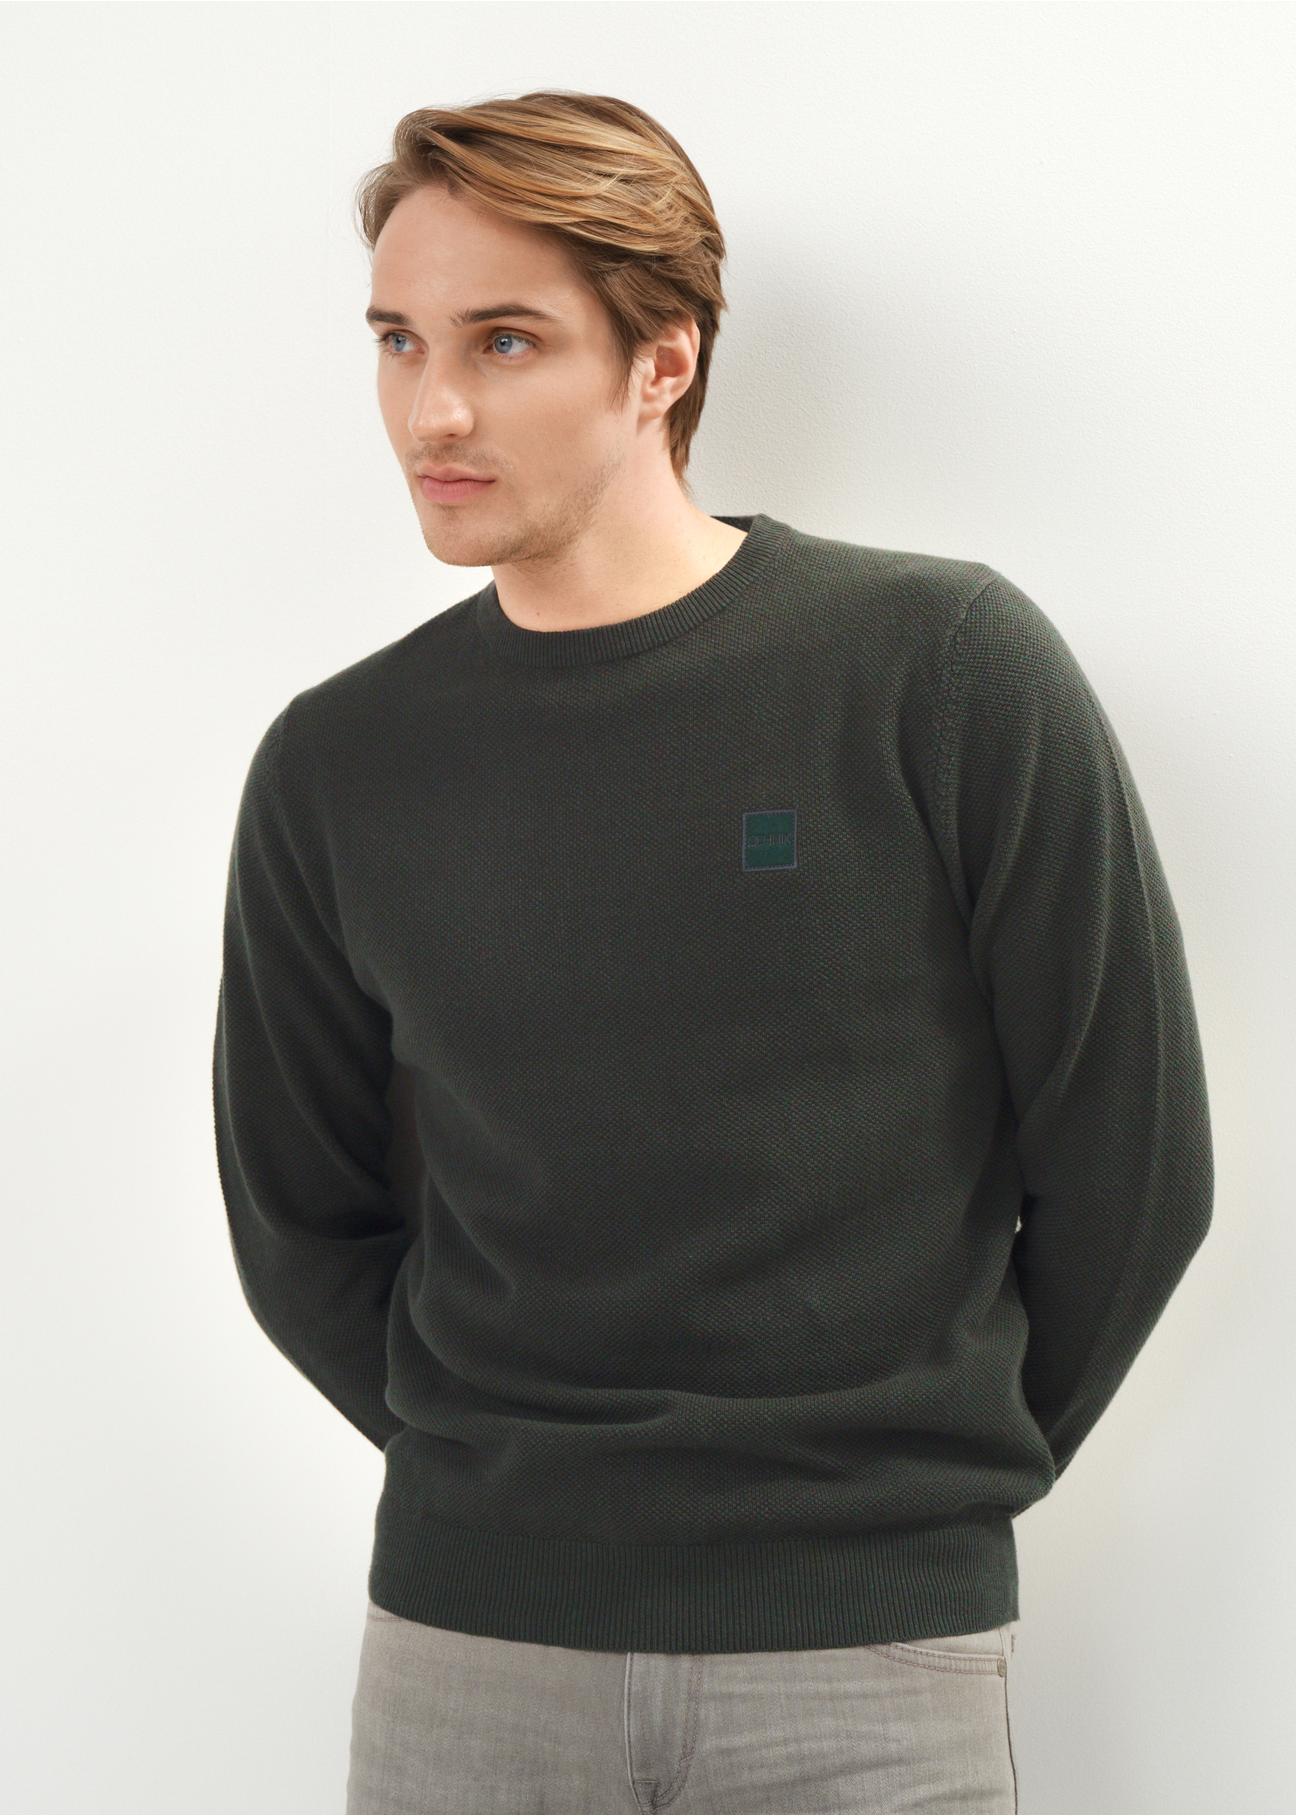 Zielony bawełniany sweter męski z logo SWEMT-0135-54(Z23)